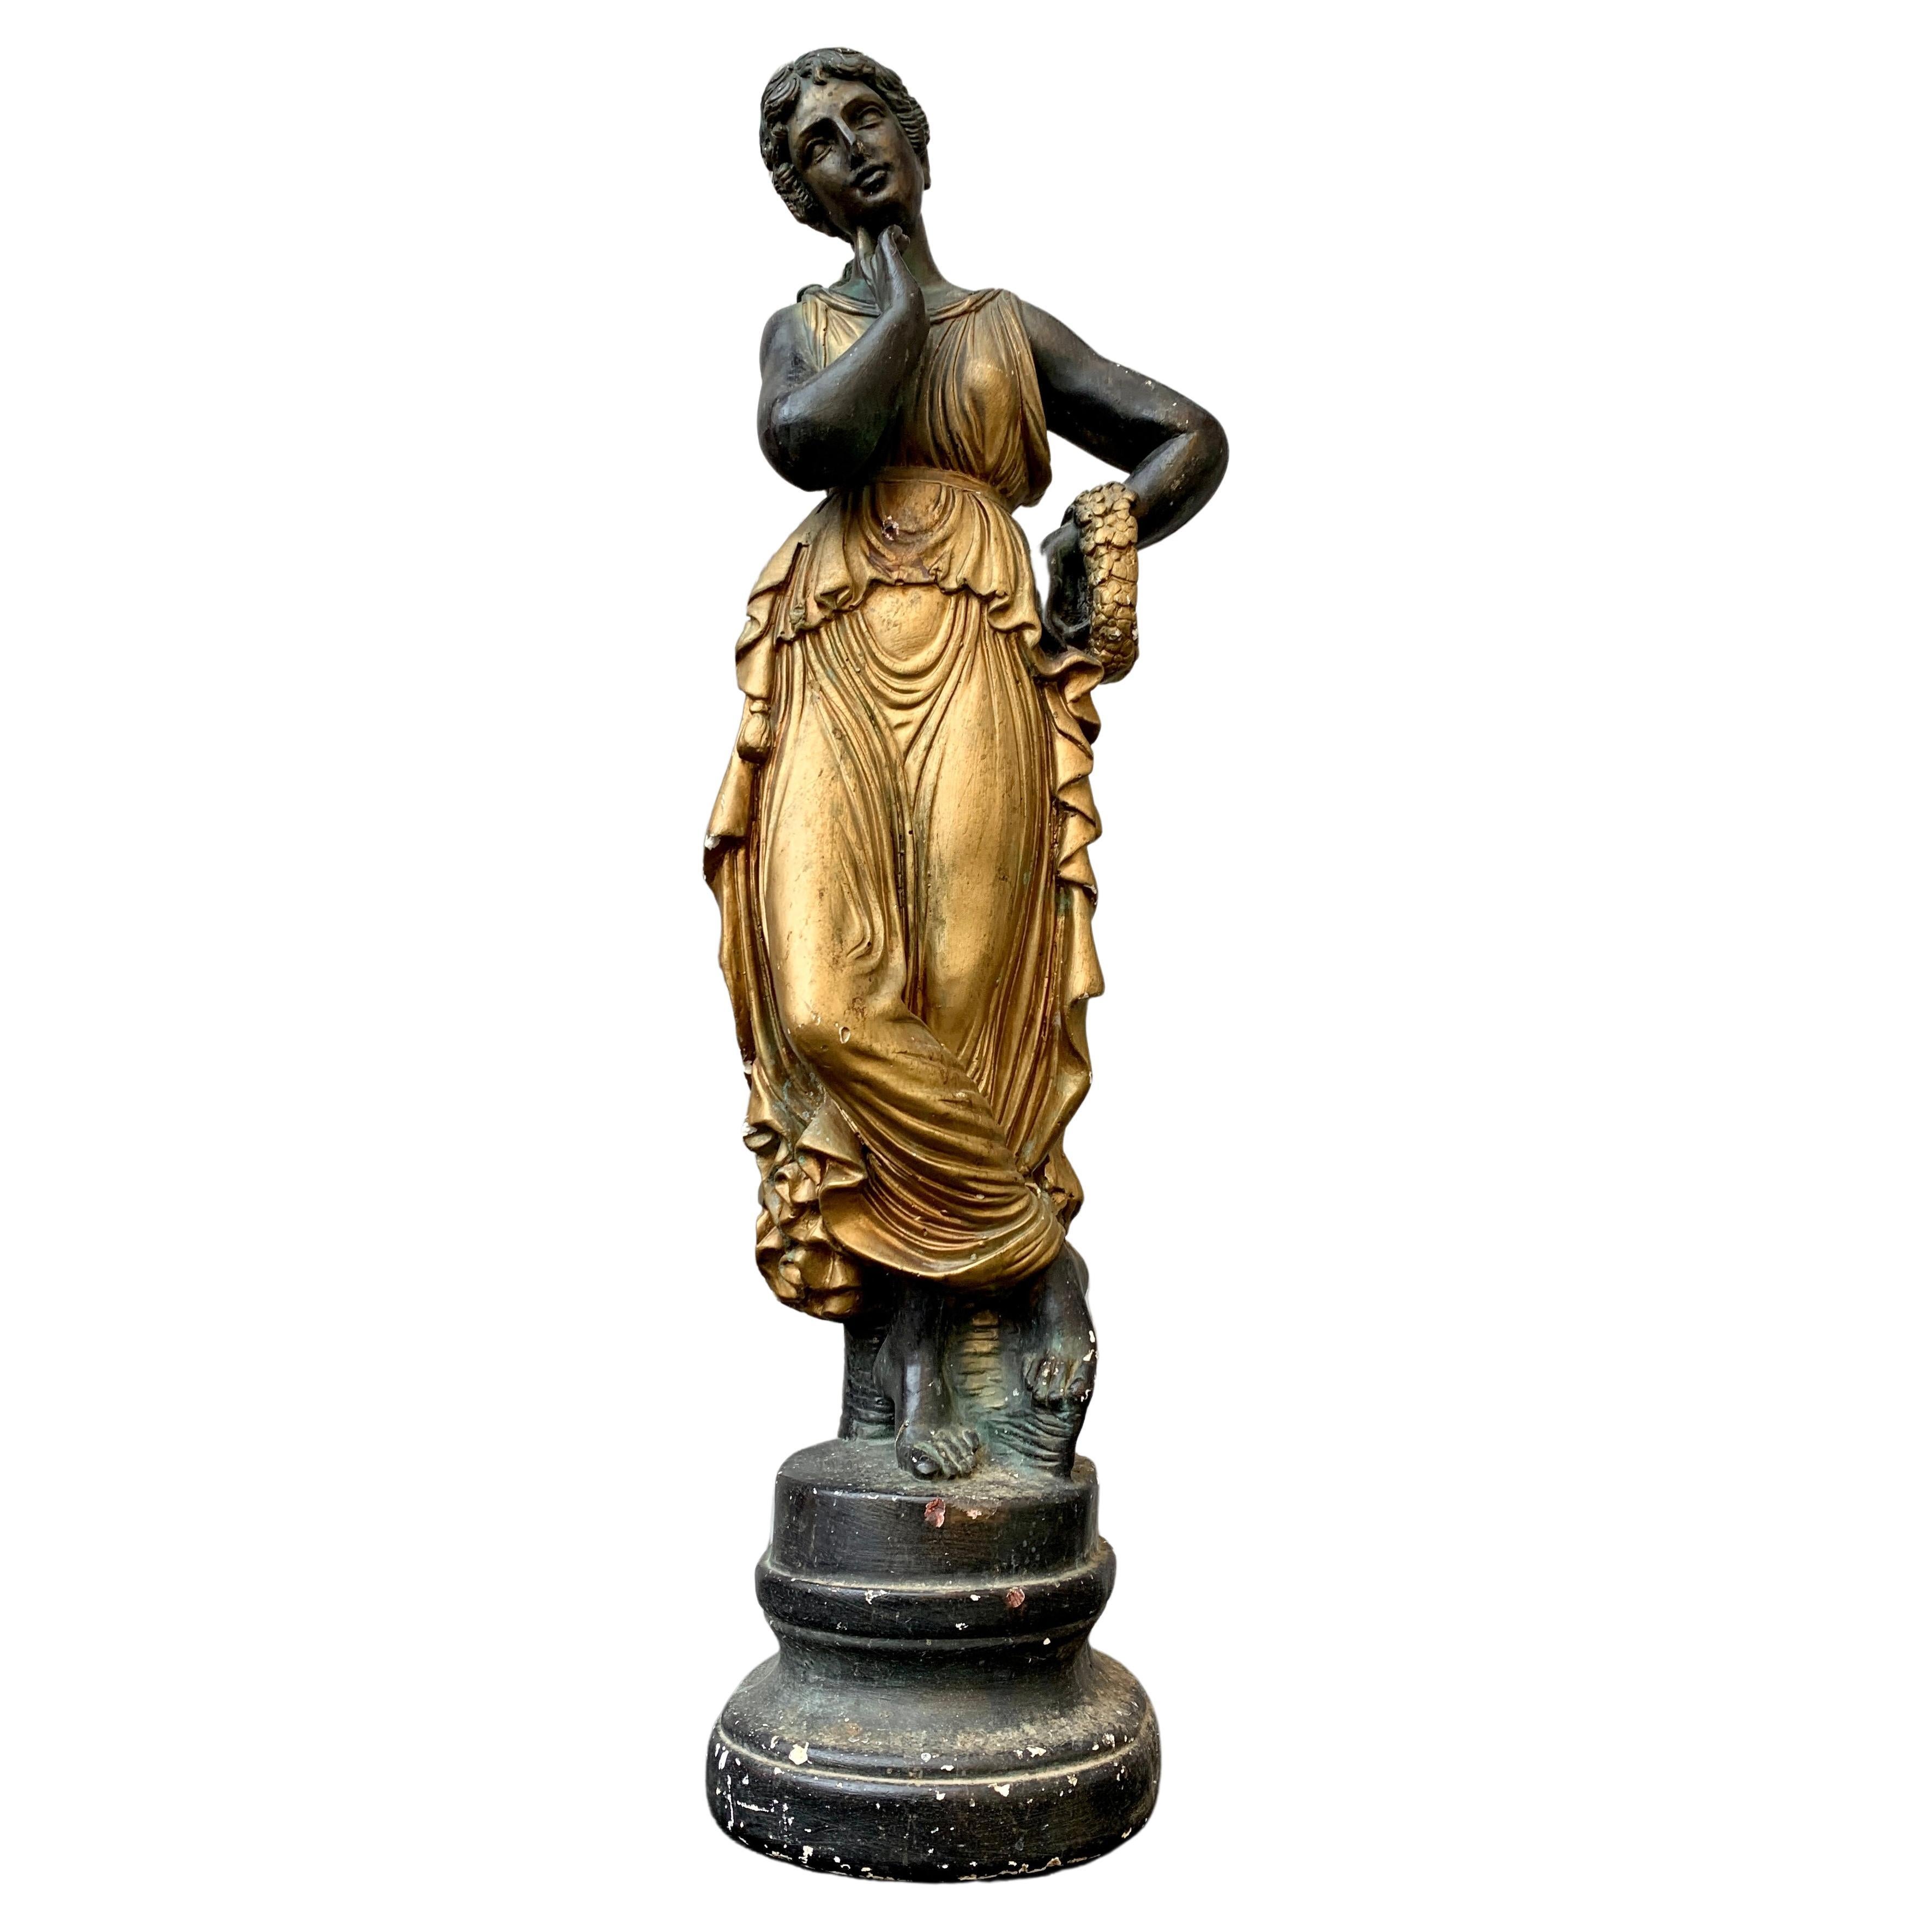 Polychrome Skulptur einer römischen Frau aus dem 19. Jahrhundert